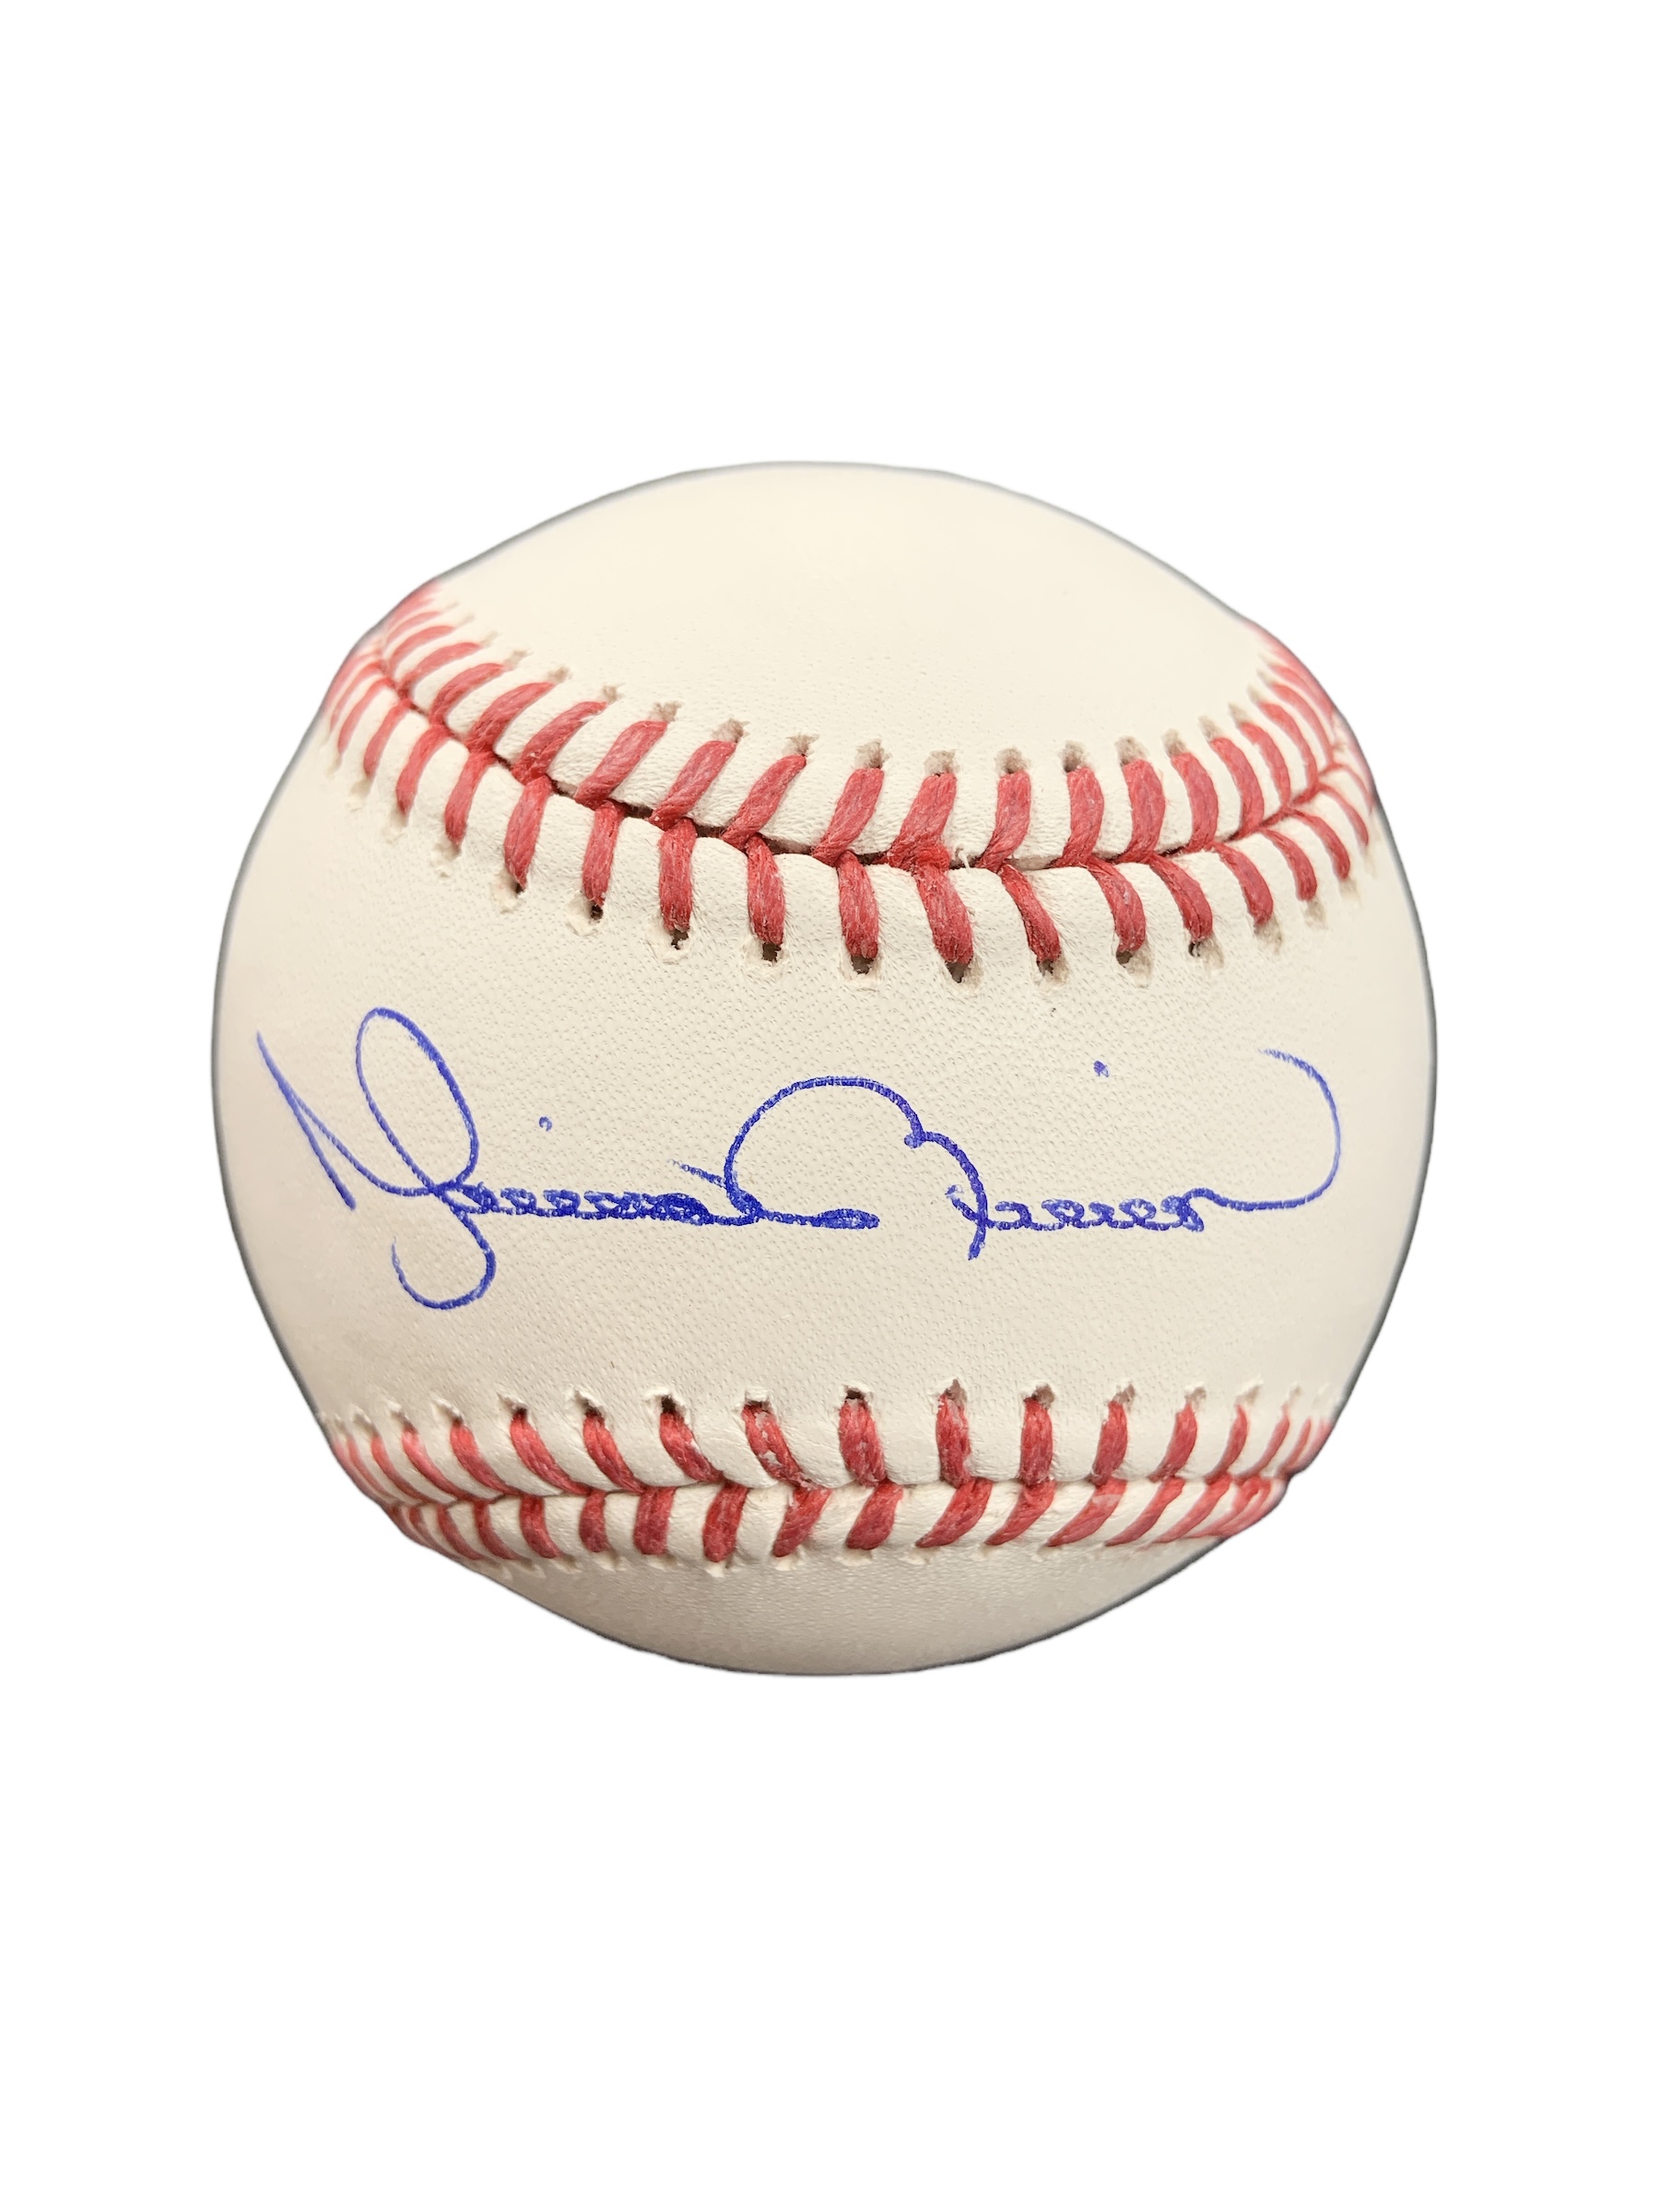 Mariano Rivera New York Yankees Signed Official MLB Baseball MLB Fanatics